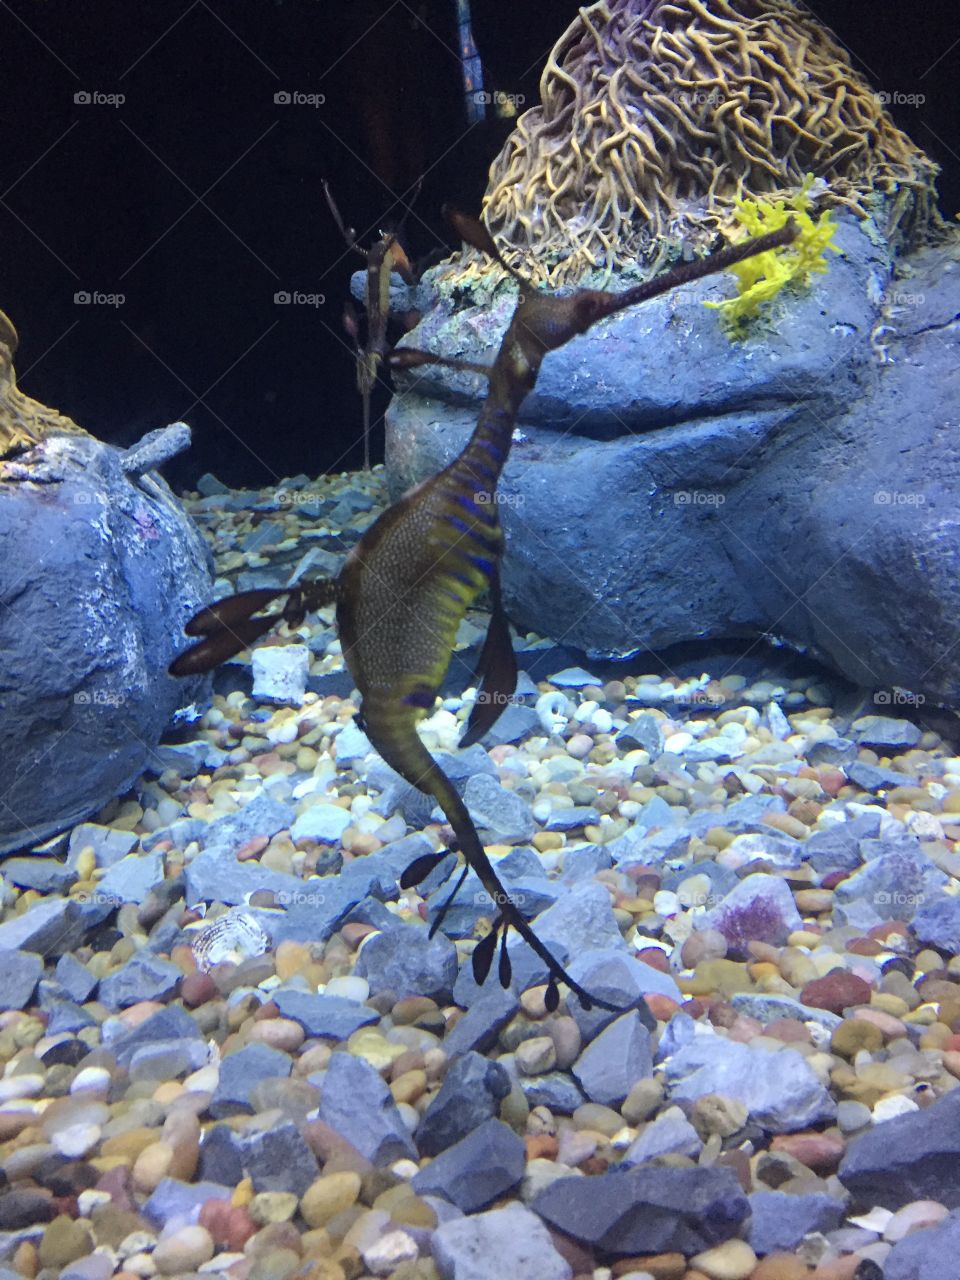 Seadragon at the aquarium 